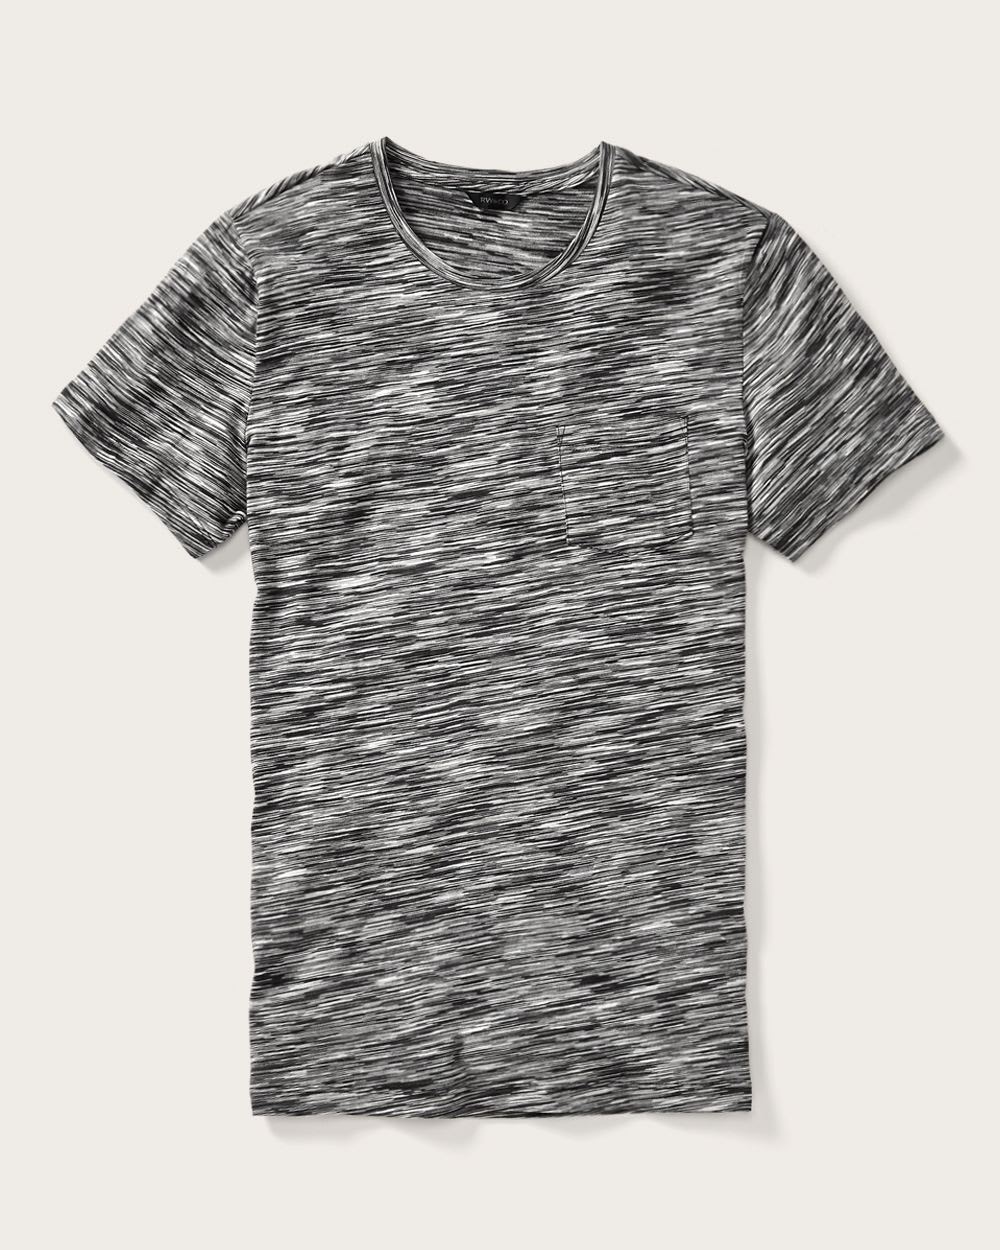 Space dye t-shirt | RW&CO.